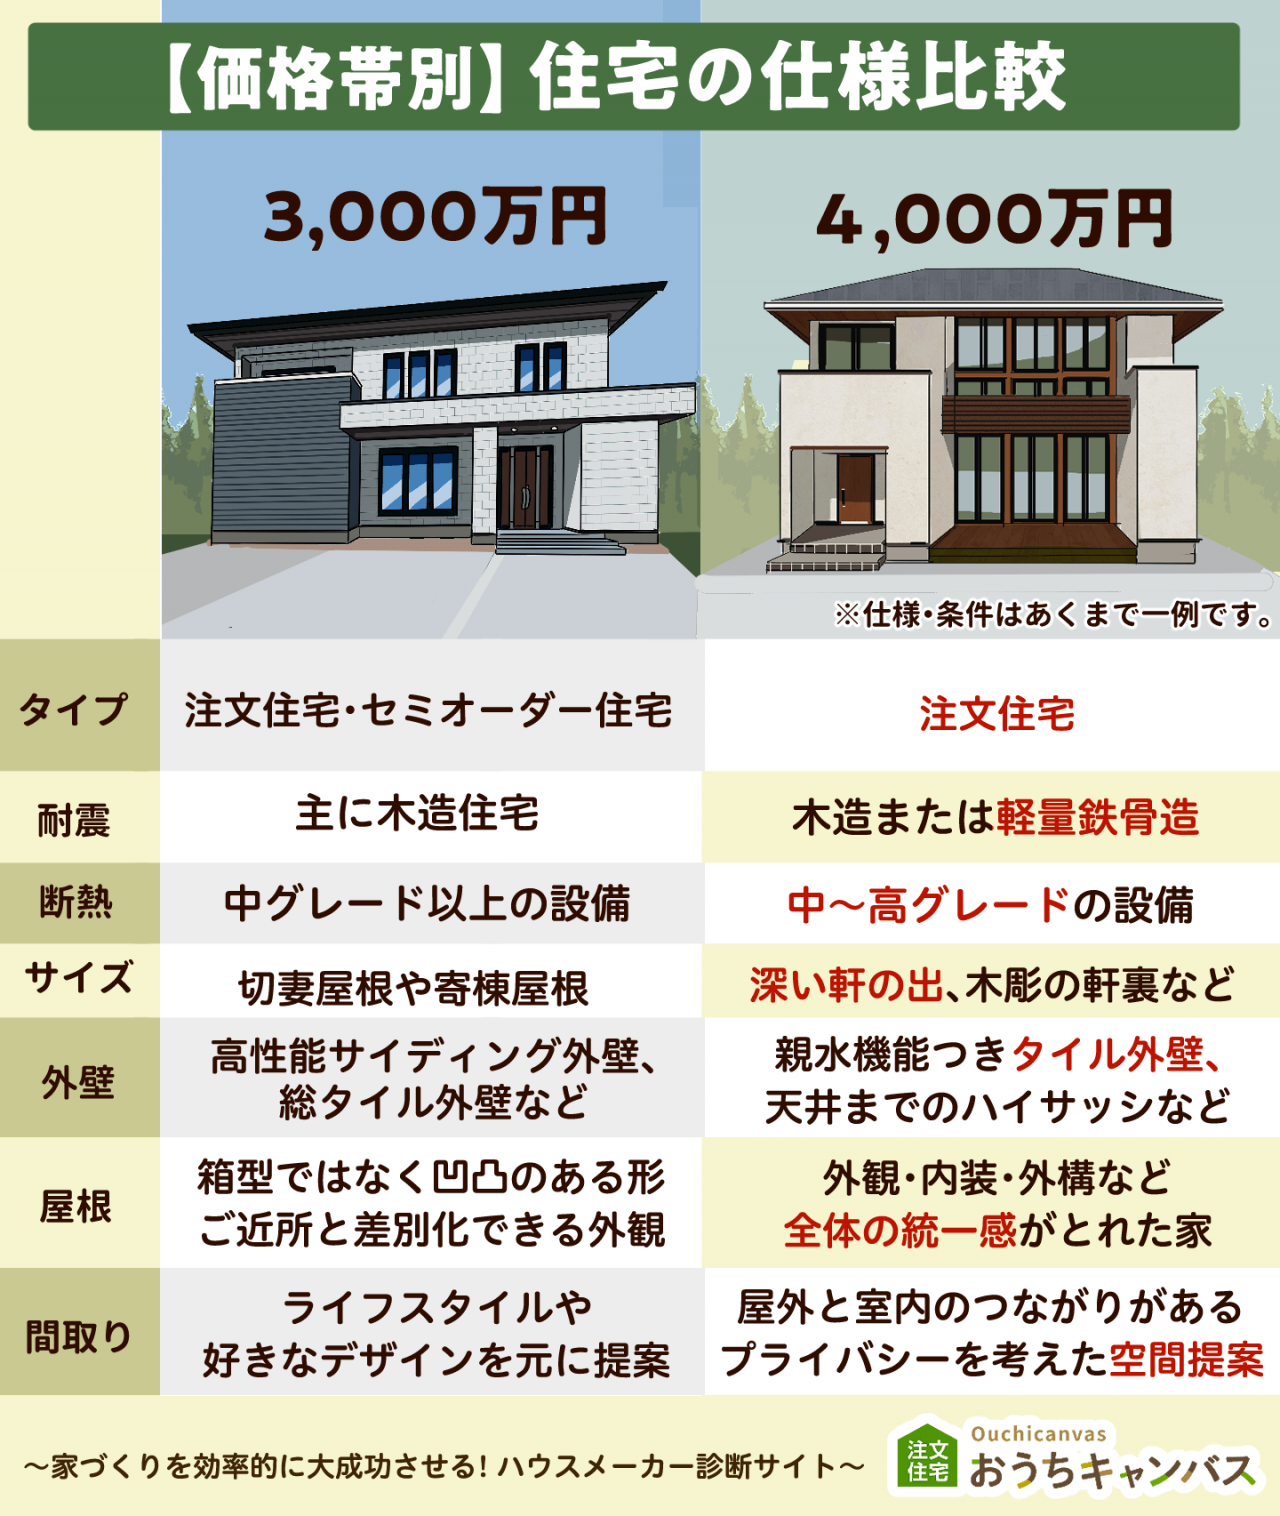 3,000万円と4,000万円の住宅の仕様比較